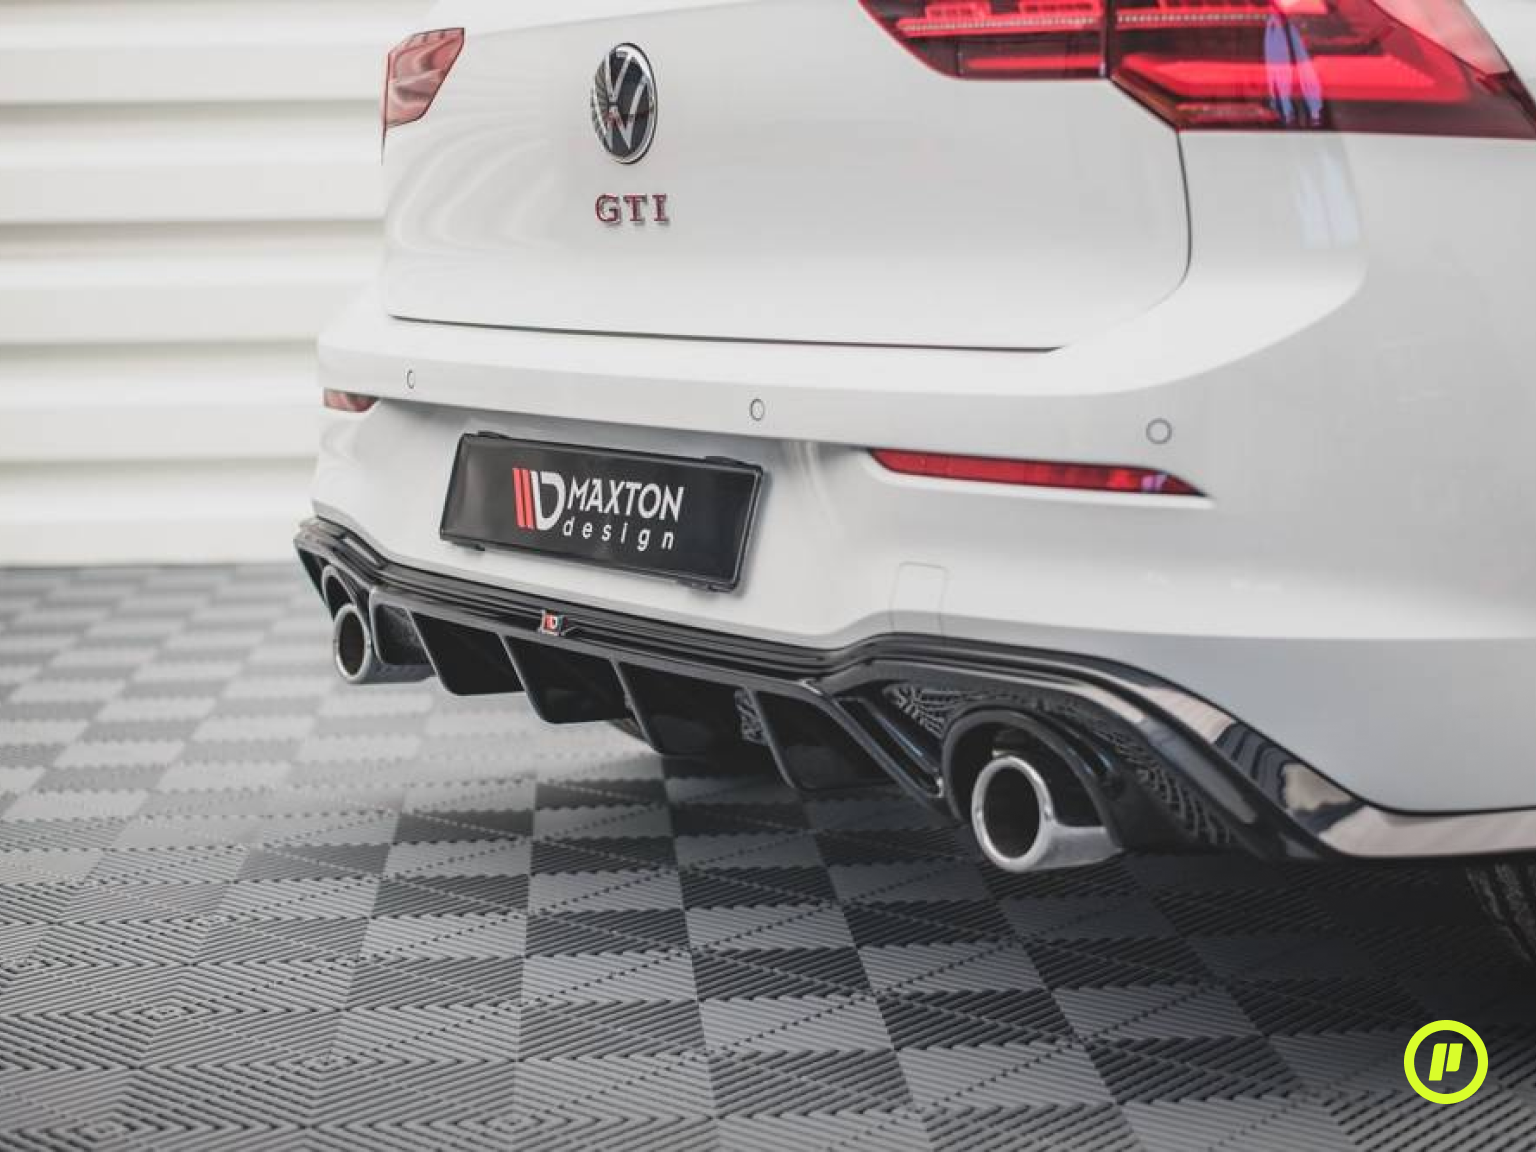 Maxton Design - Rear Valance v2 for Volkswagen Golf 8 GTI (Mk8 2019+)